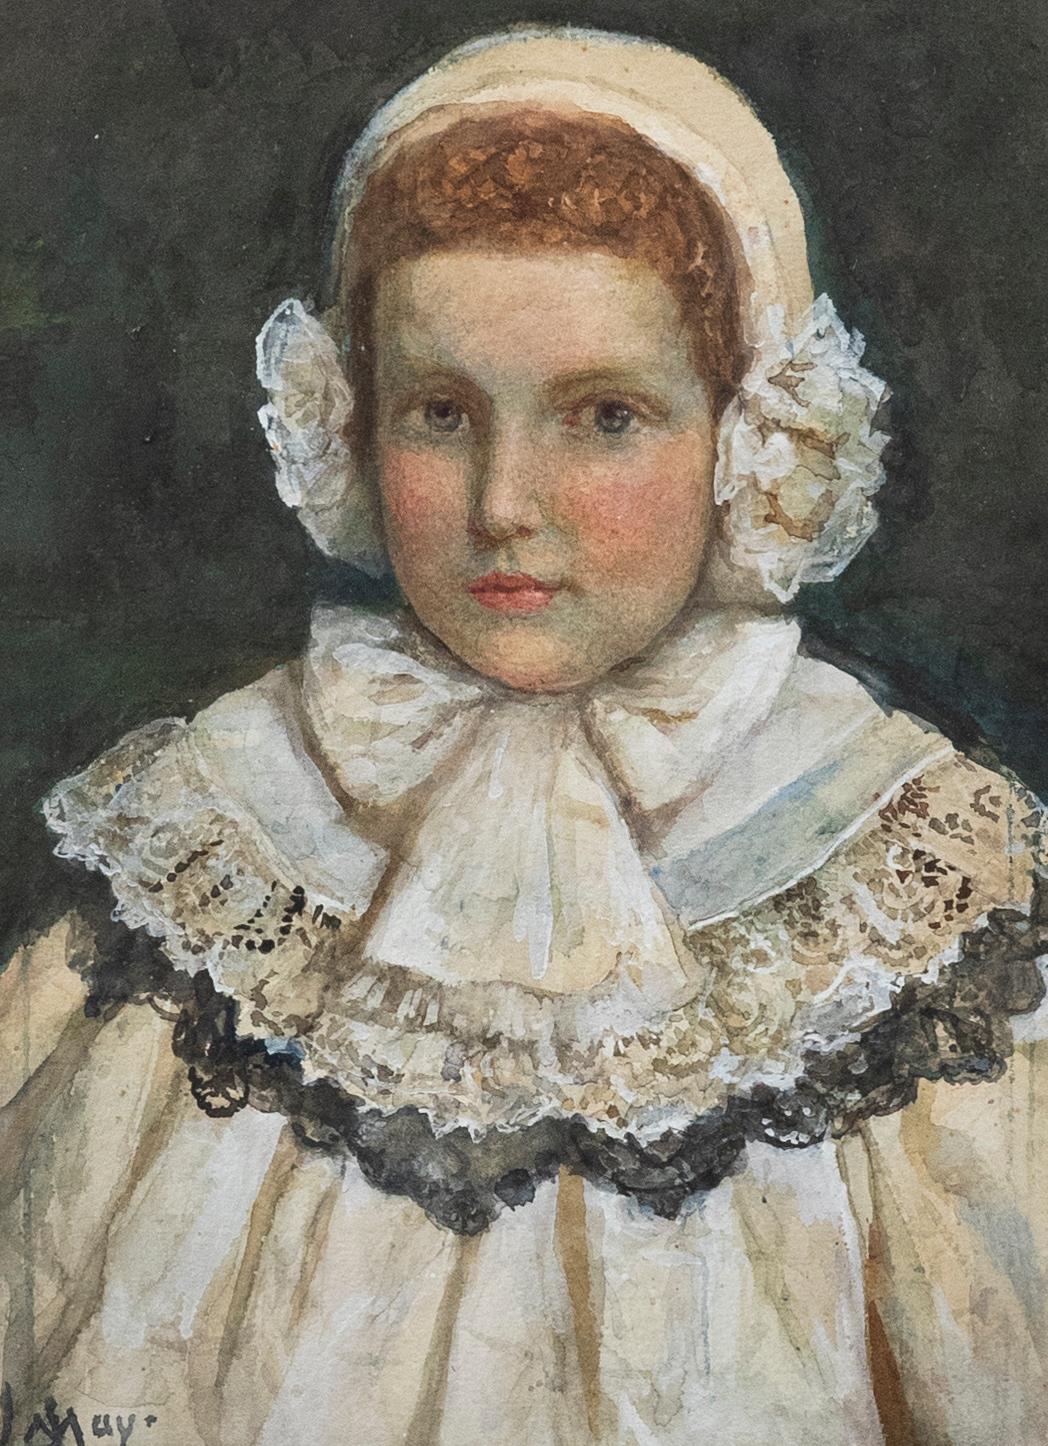 J. May – gerahmtes Aquarell des späten 19. Jahrhunderts, Porträt eines Kindes in Spitze, J. May – Art von Unknown